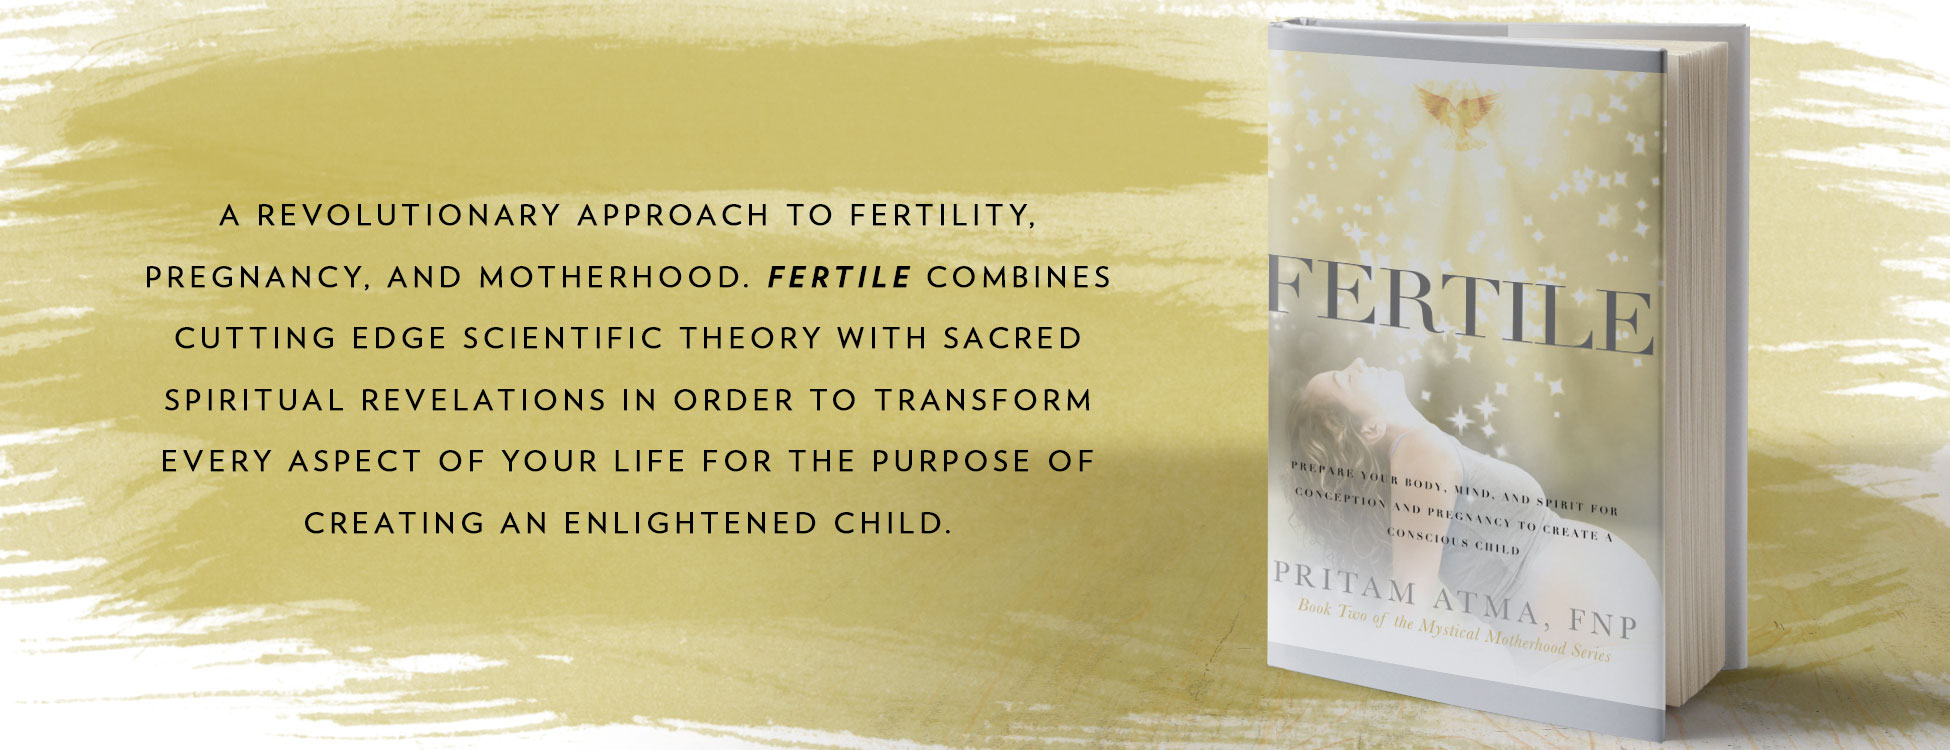 Fertile Book by Pritam Atma